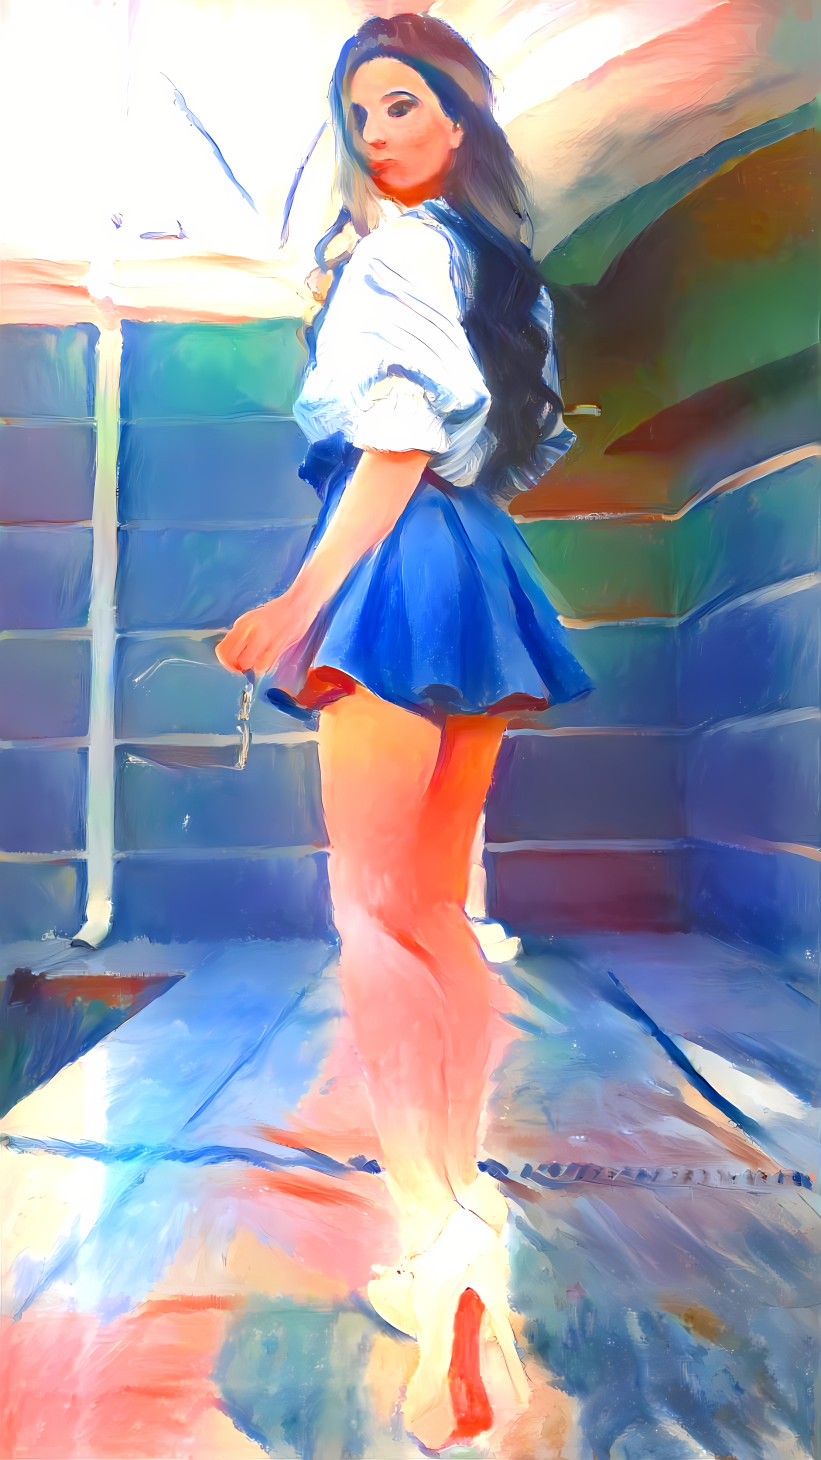 model in heels & skirt by pool, painting